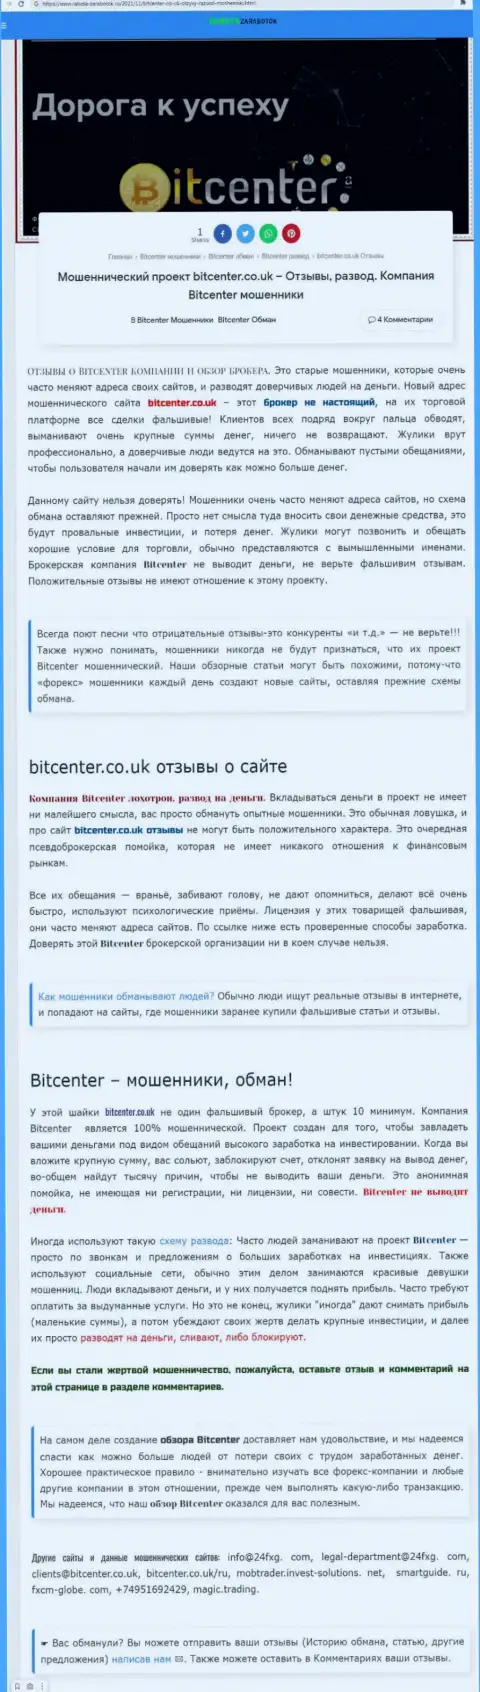 БитЦентер - это организация, сотрудничество с которой приносит только убытки (обзор мошеннических комбинаций)